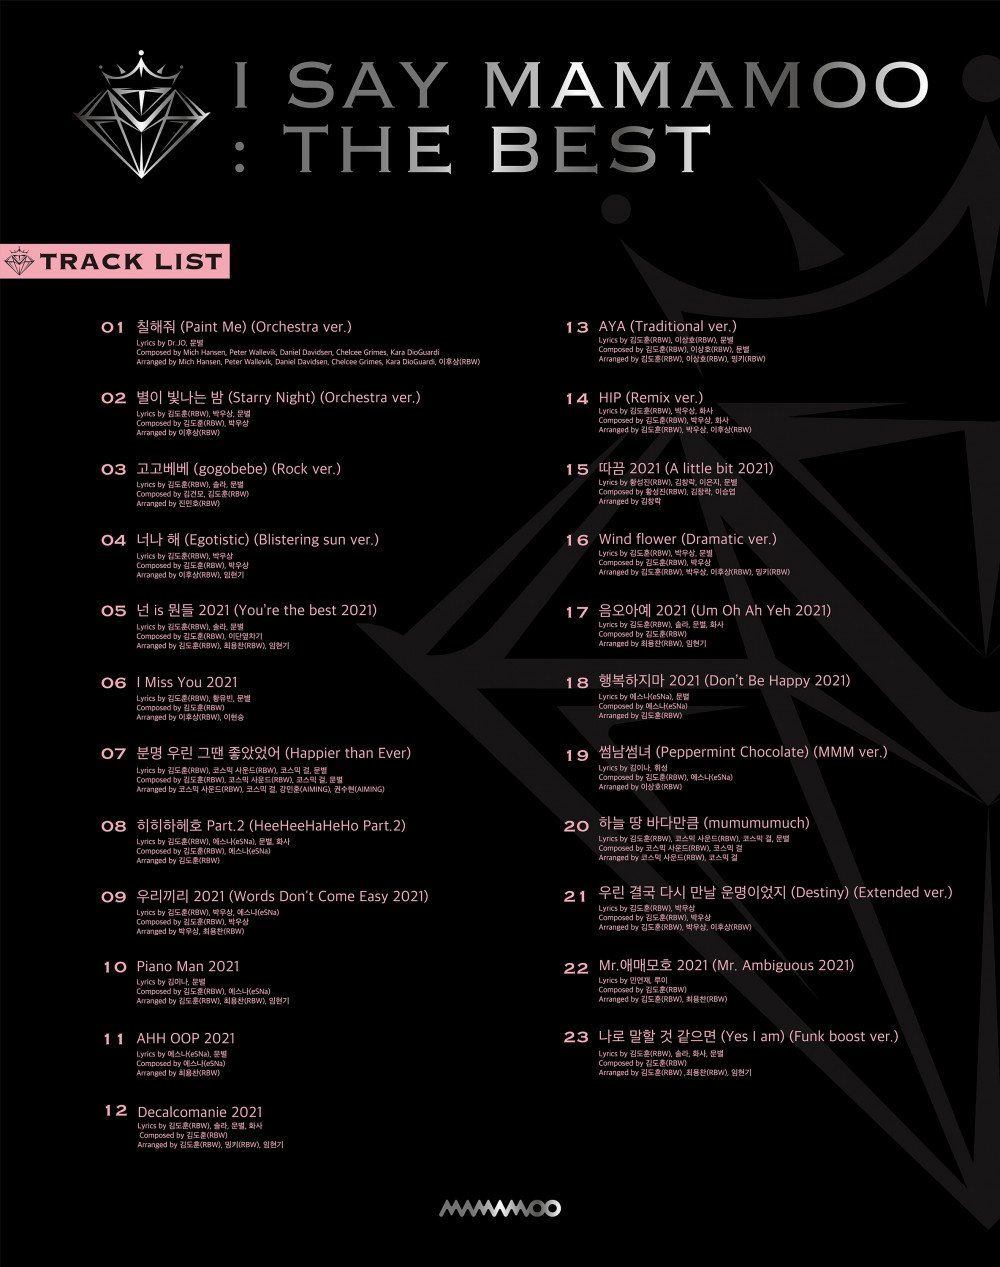 MAMAMOO's 'I Say MAMAMOO: The Best' album tracklist